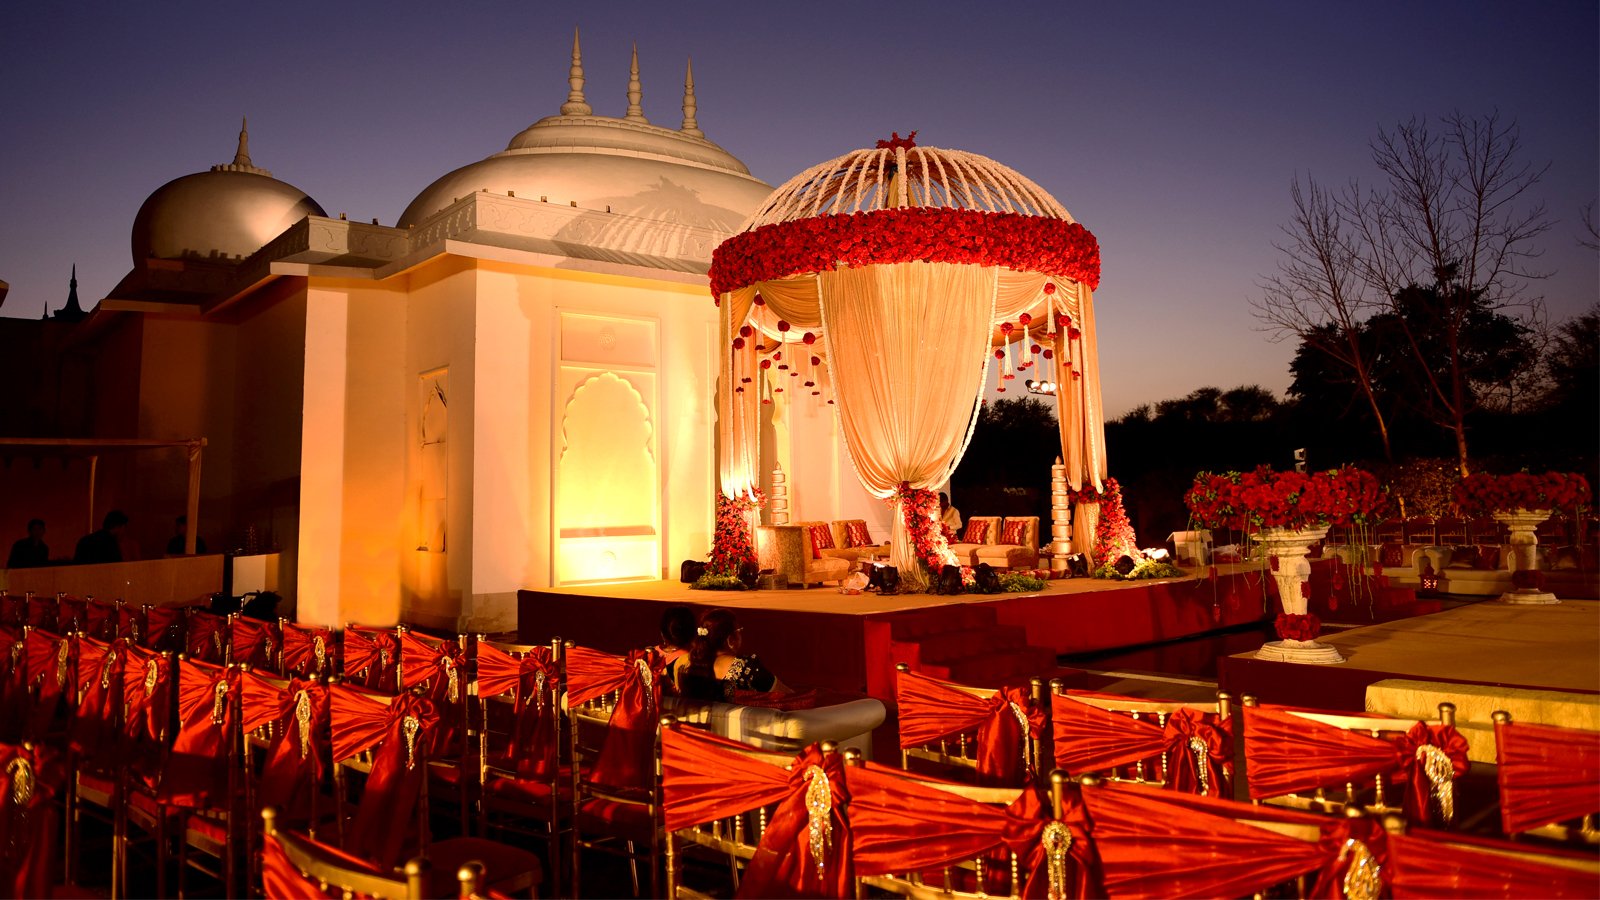 Destination Wedding in Jaipur